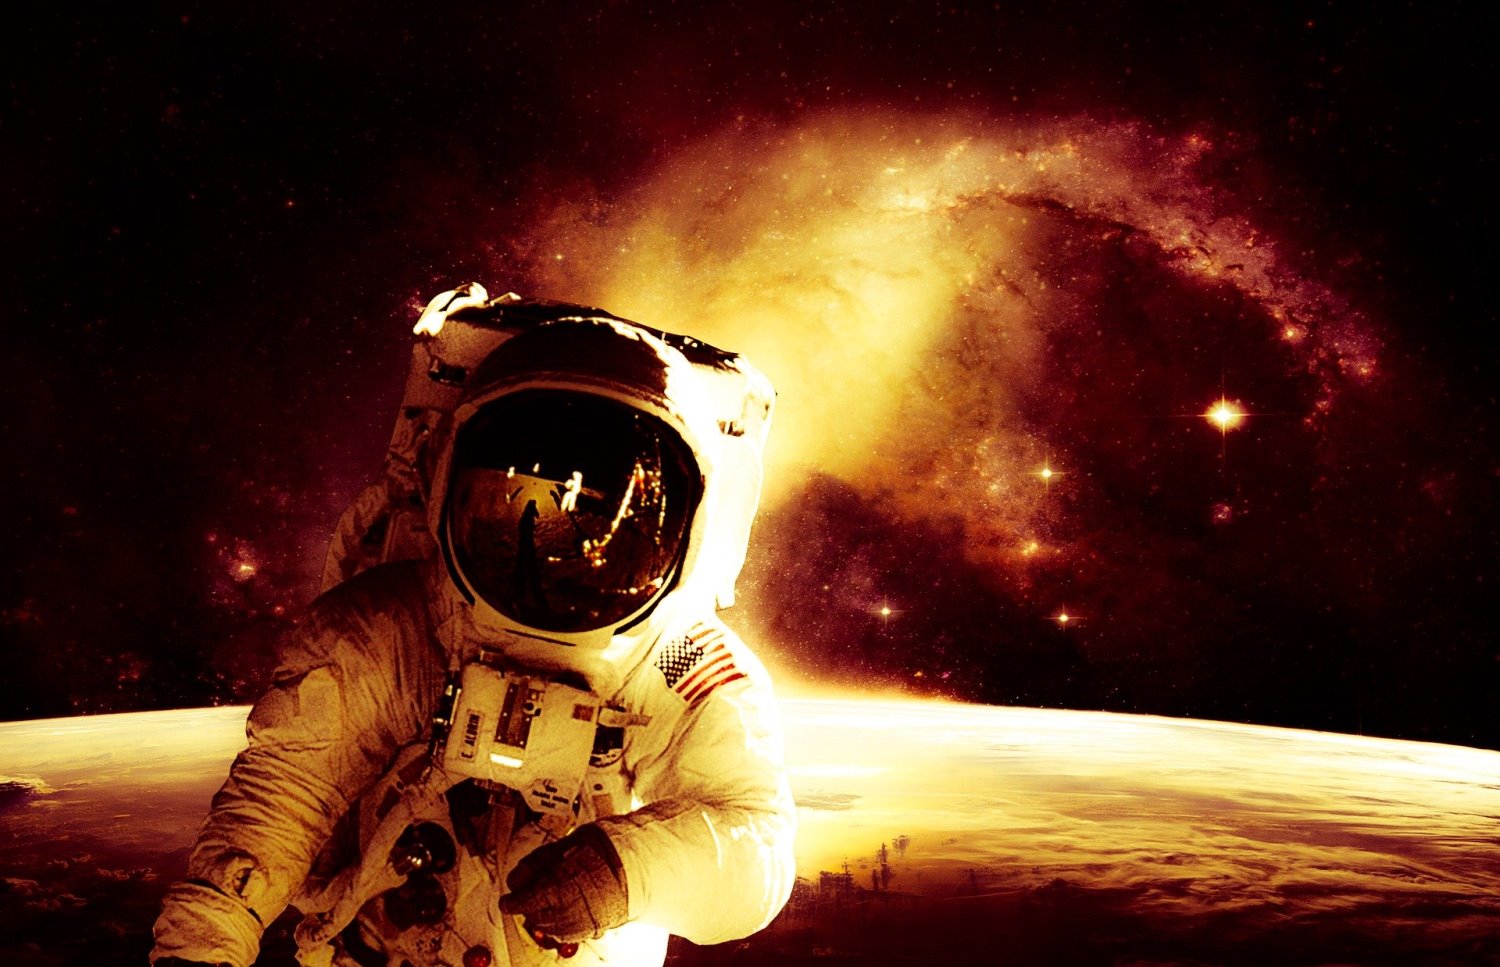 אסטרונאוט, החלל החיצון. צילום: mohamed Hassan from Pixabay